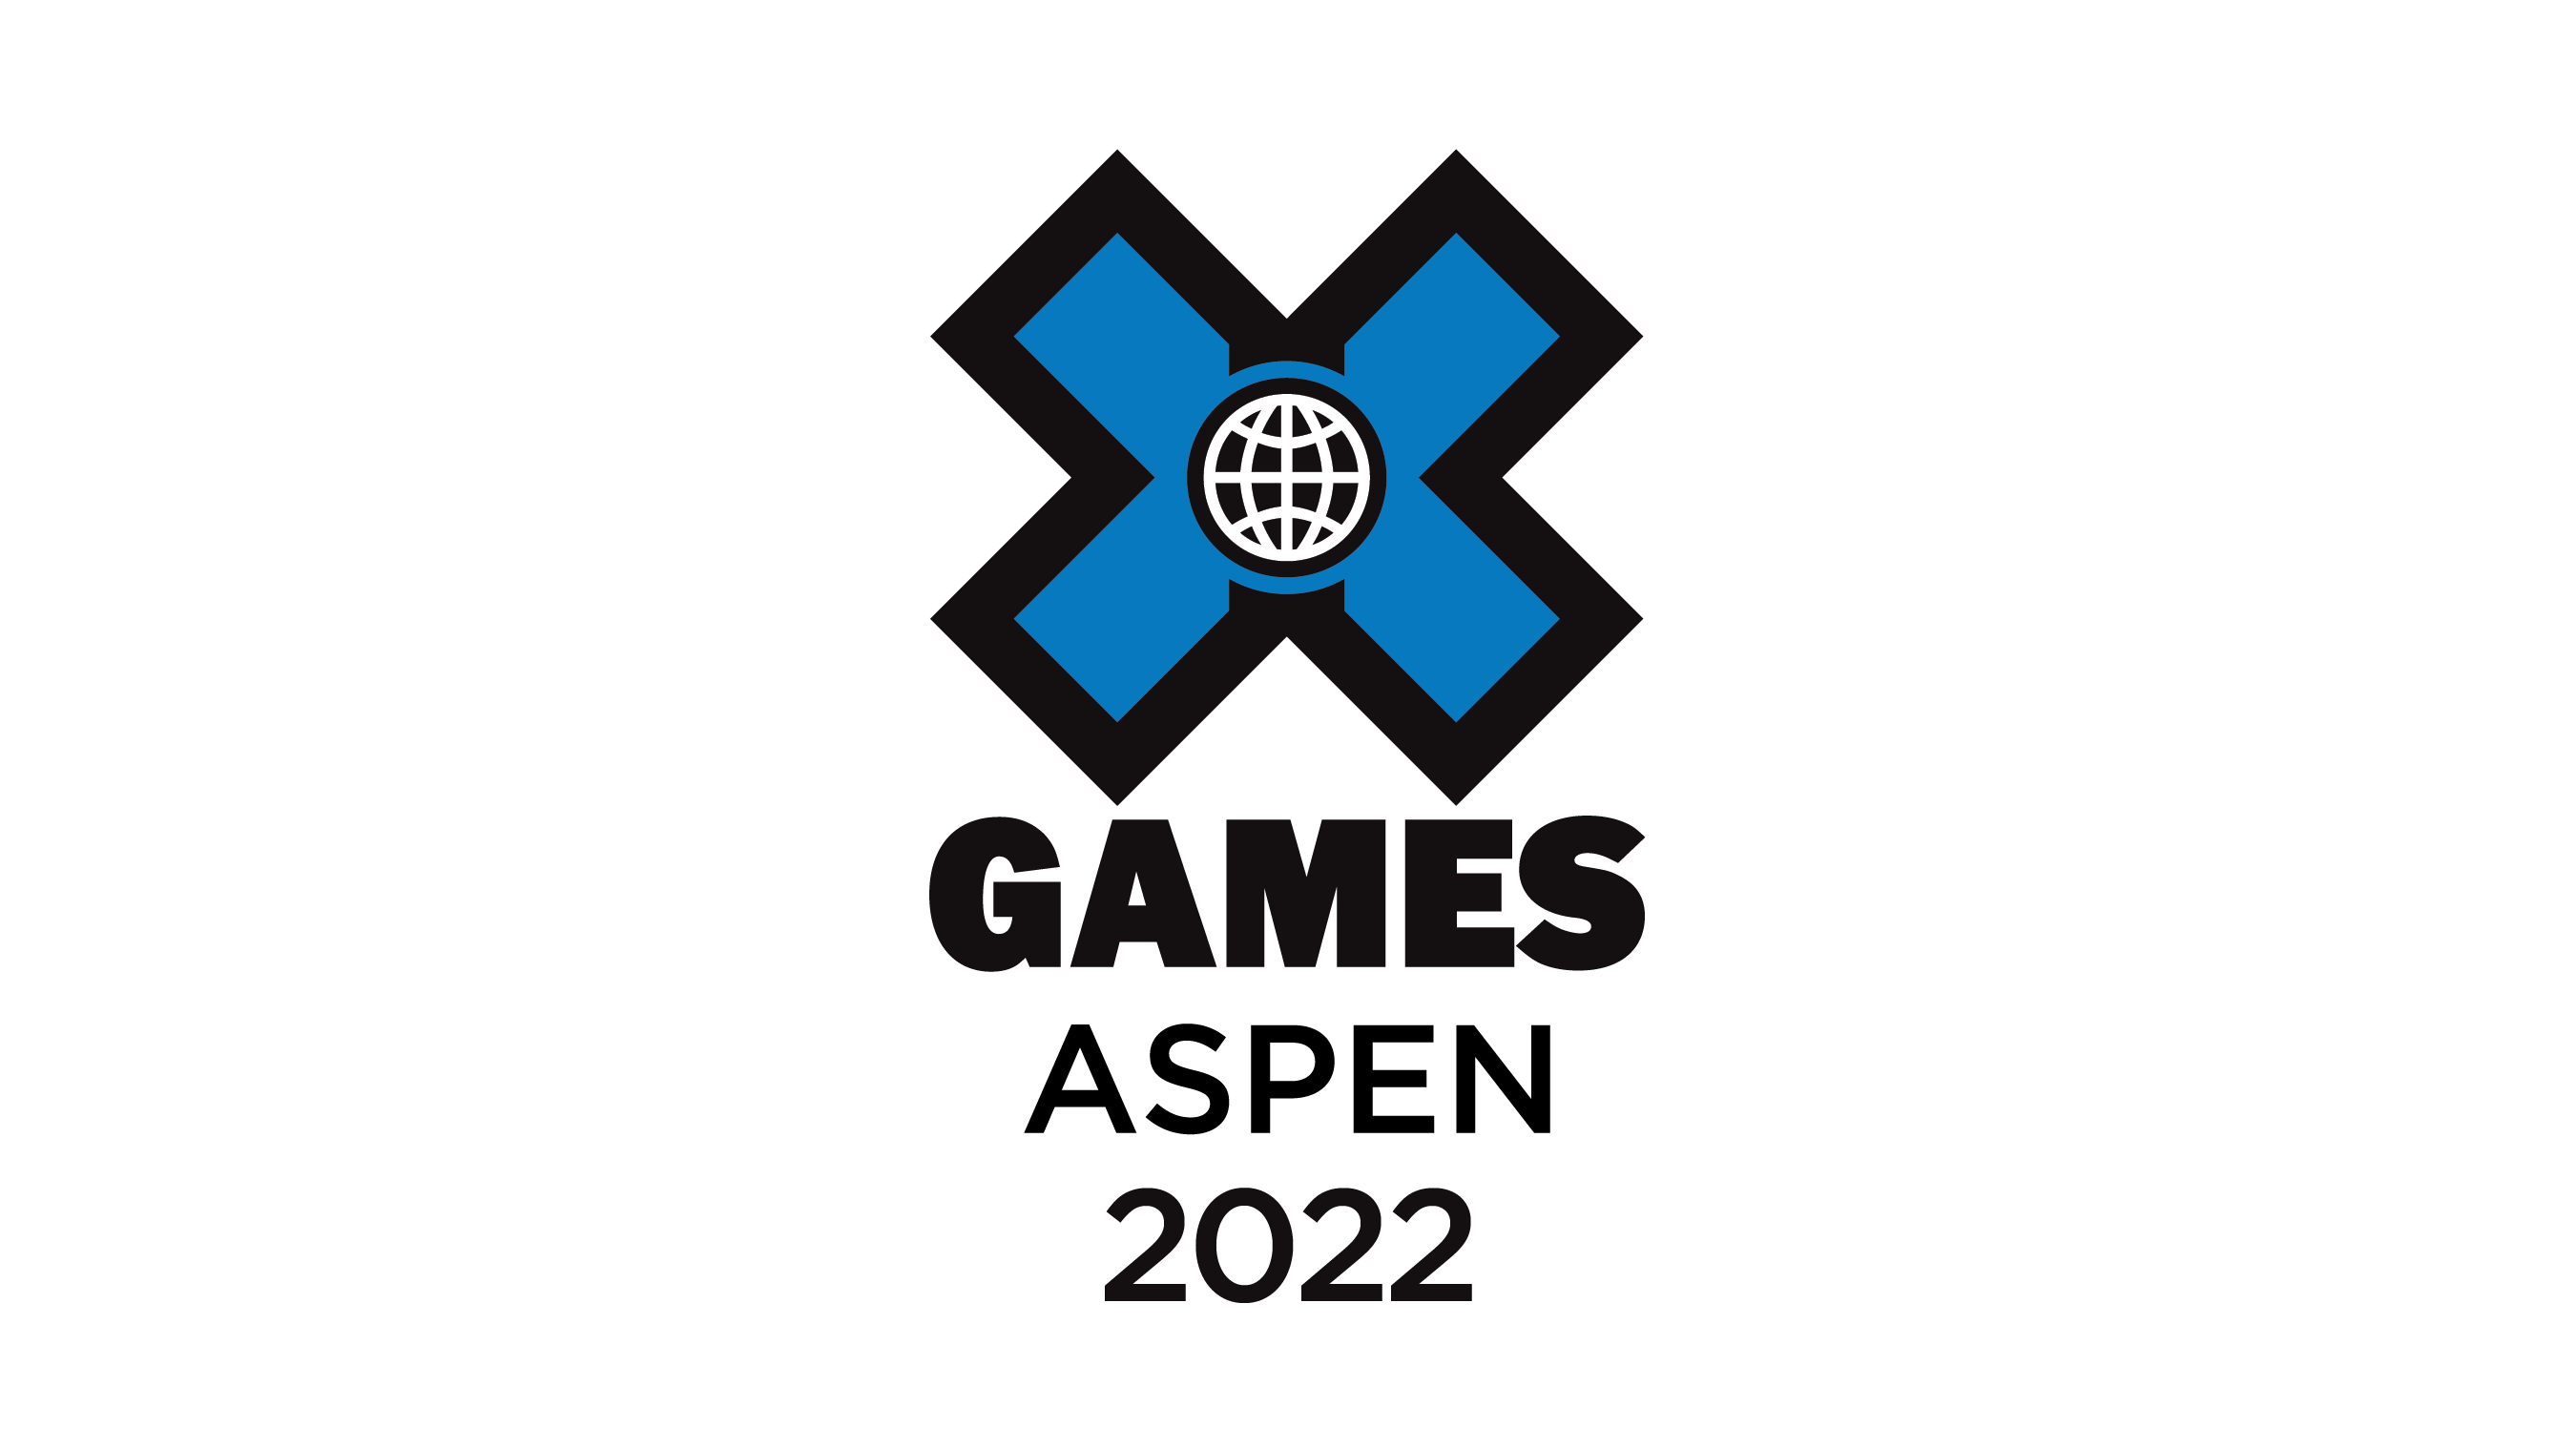 X Games Aspen 2022 Sponsors Announced